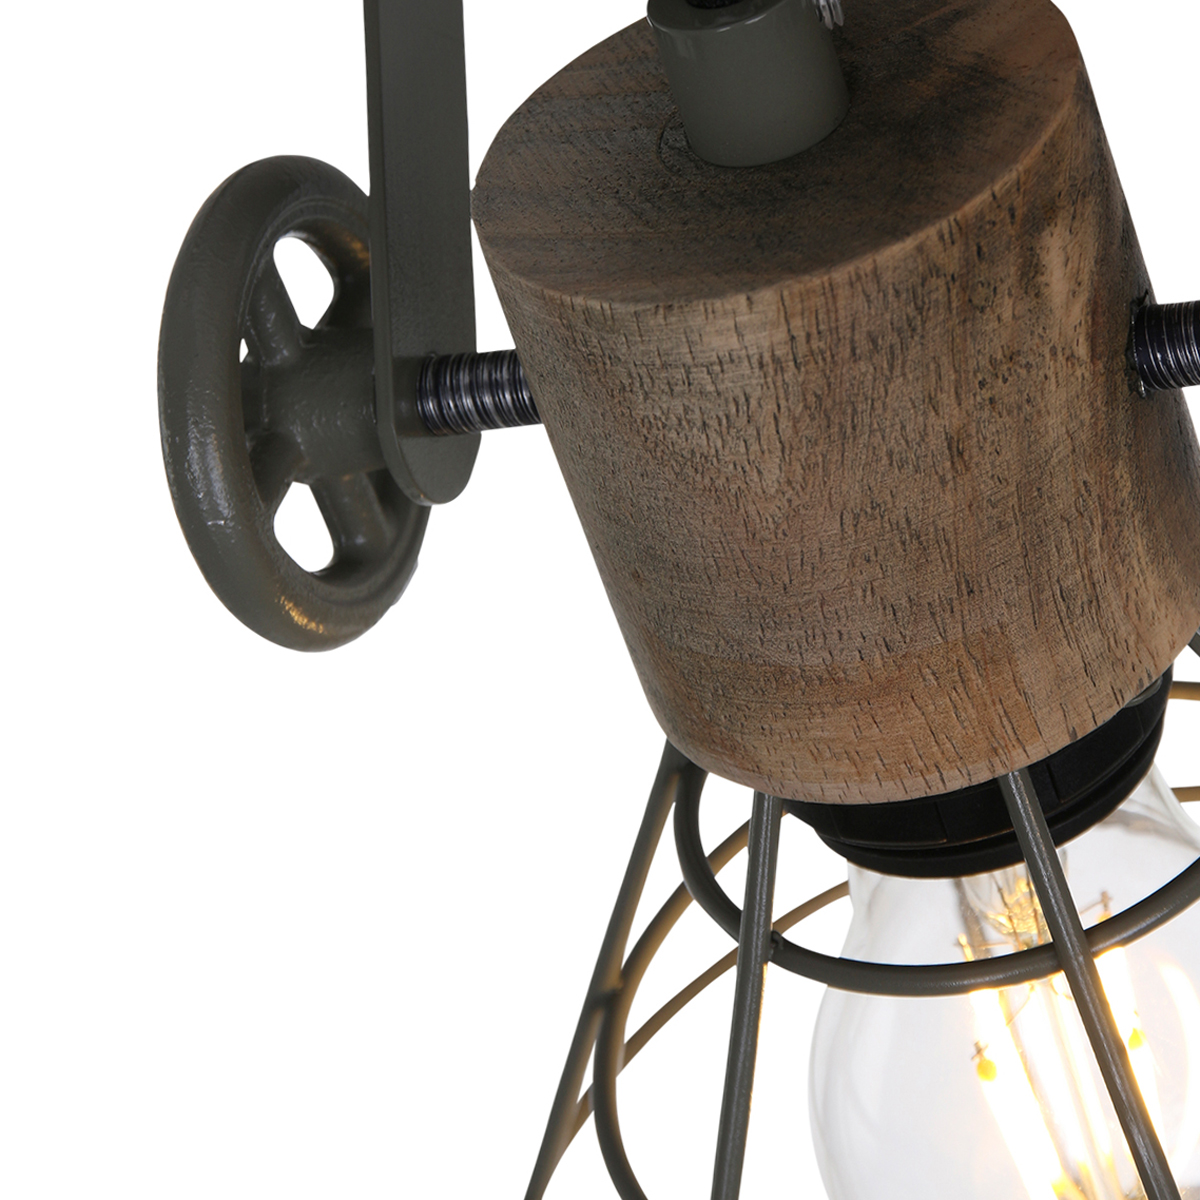 Anne GEURNSEY Wand- Deckenstrahler in freshem Industriedesign 2-flammig mit Holz in Gruen